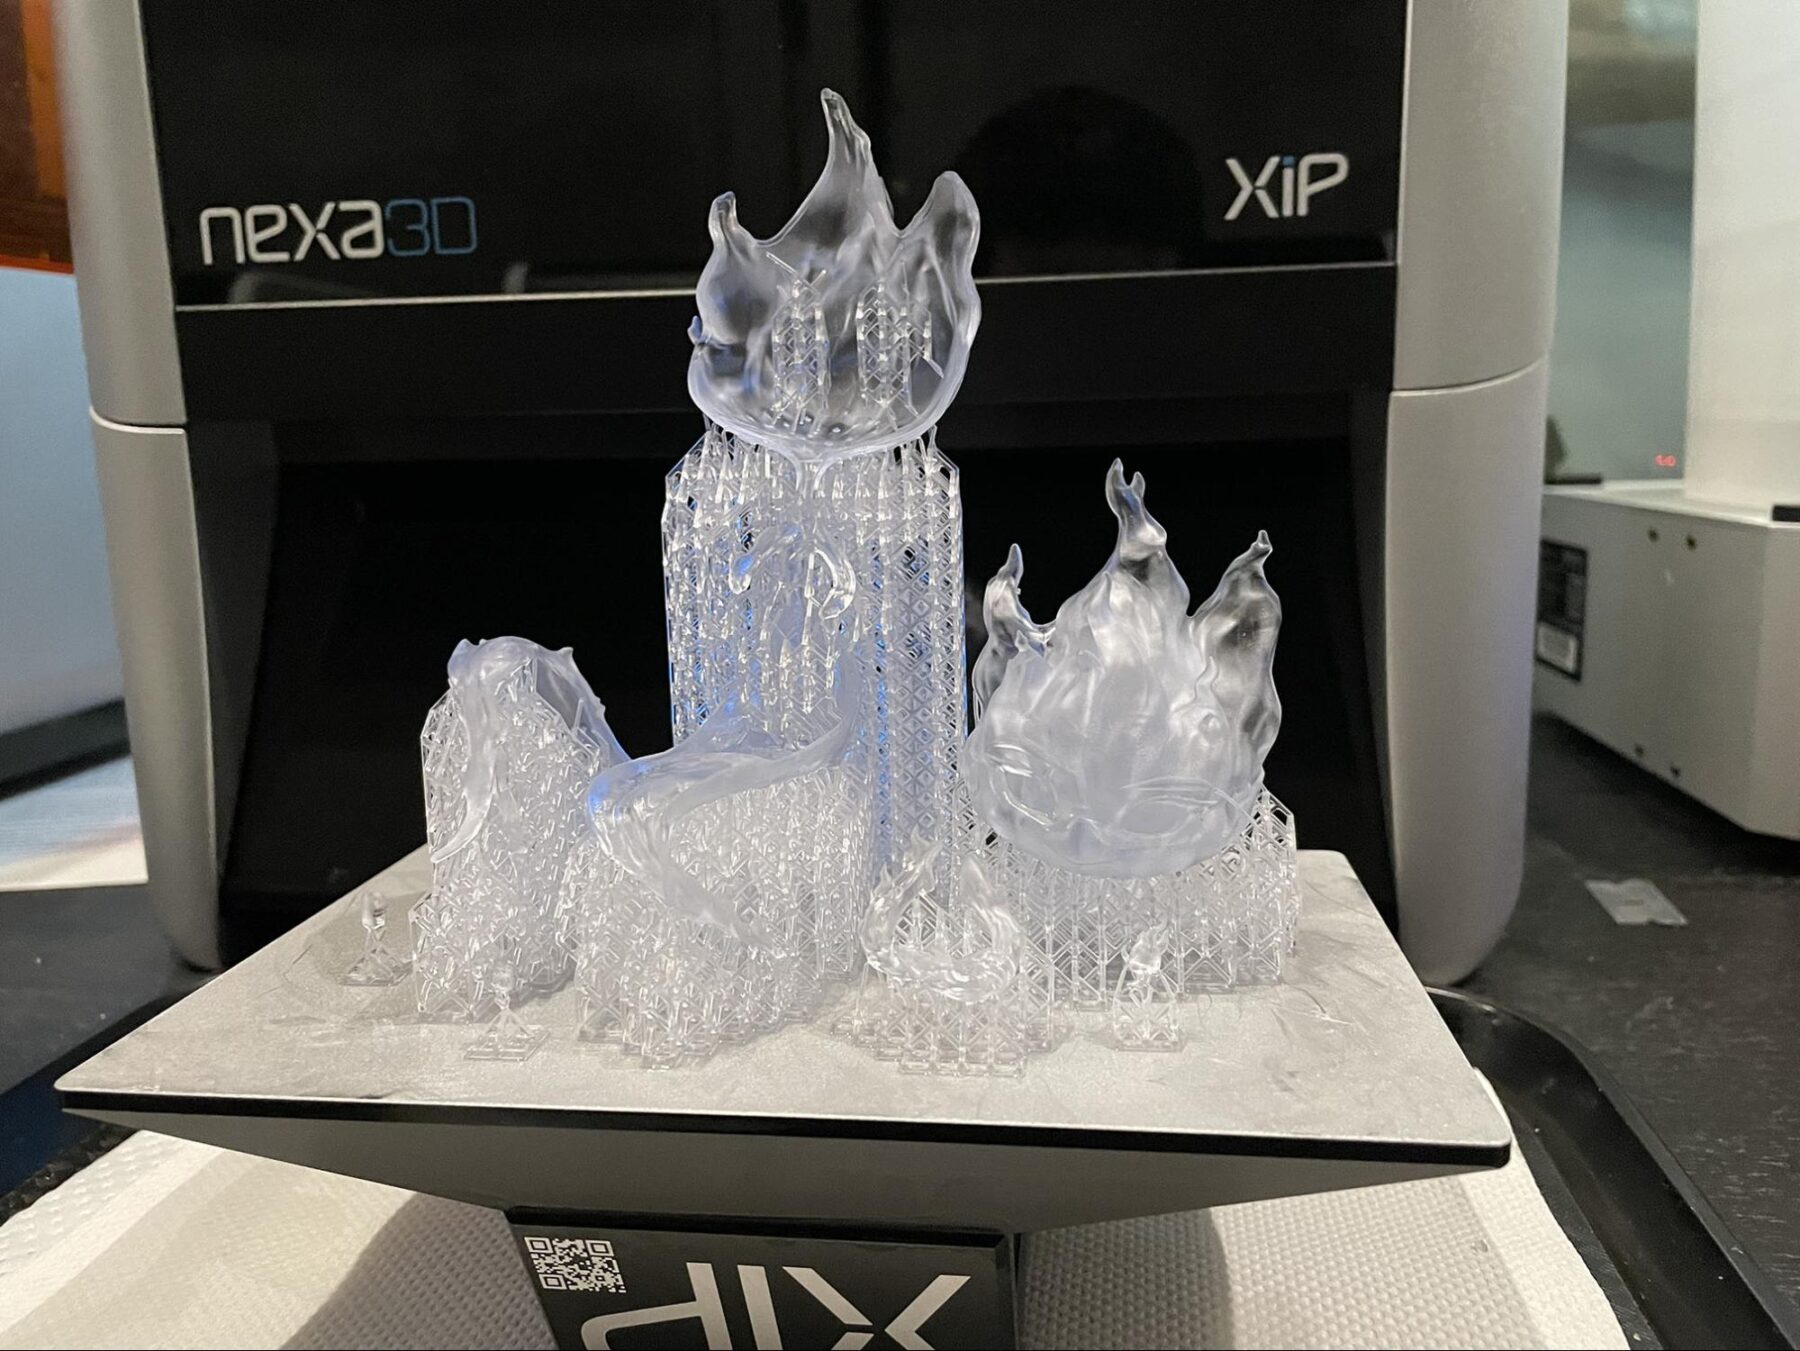 Gentle Giant Studios chose to use Nexa3D's XiP Desktop 3D Printer